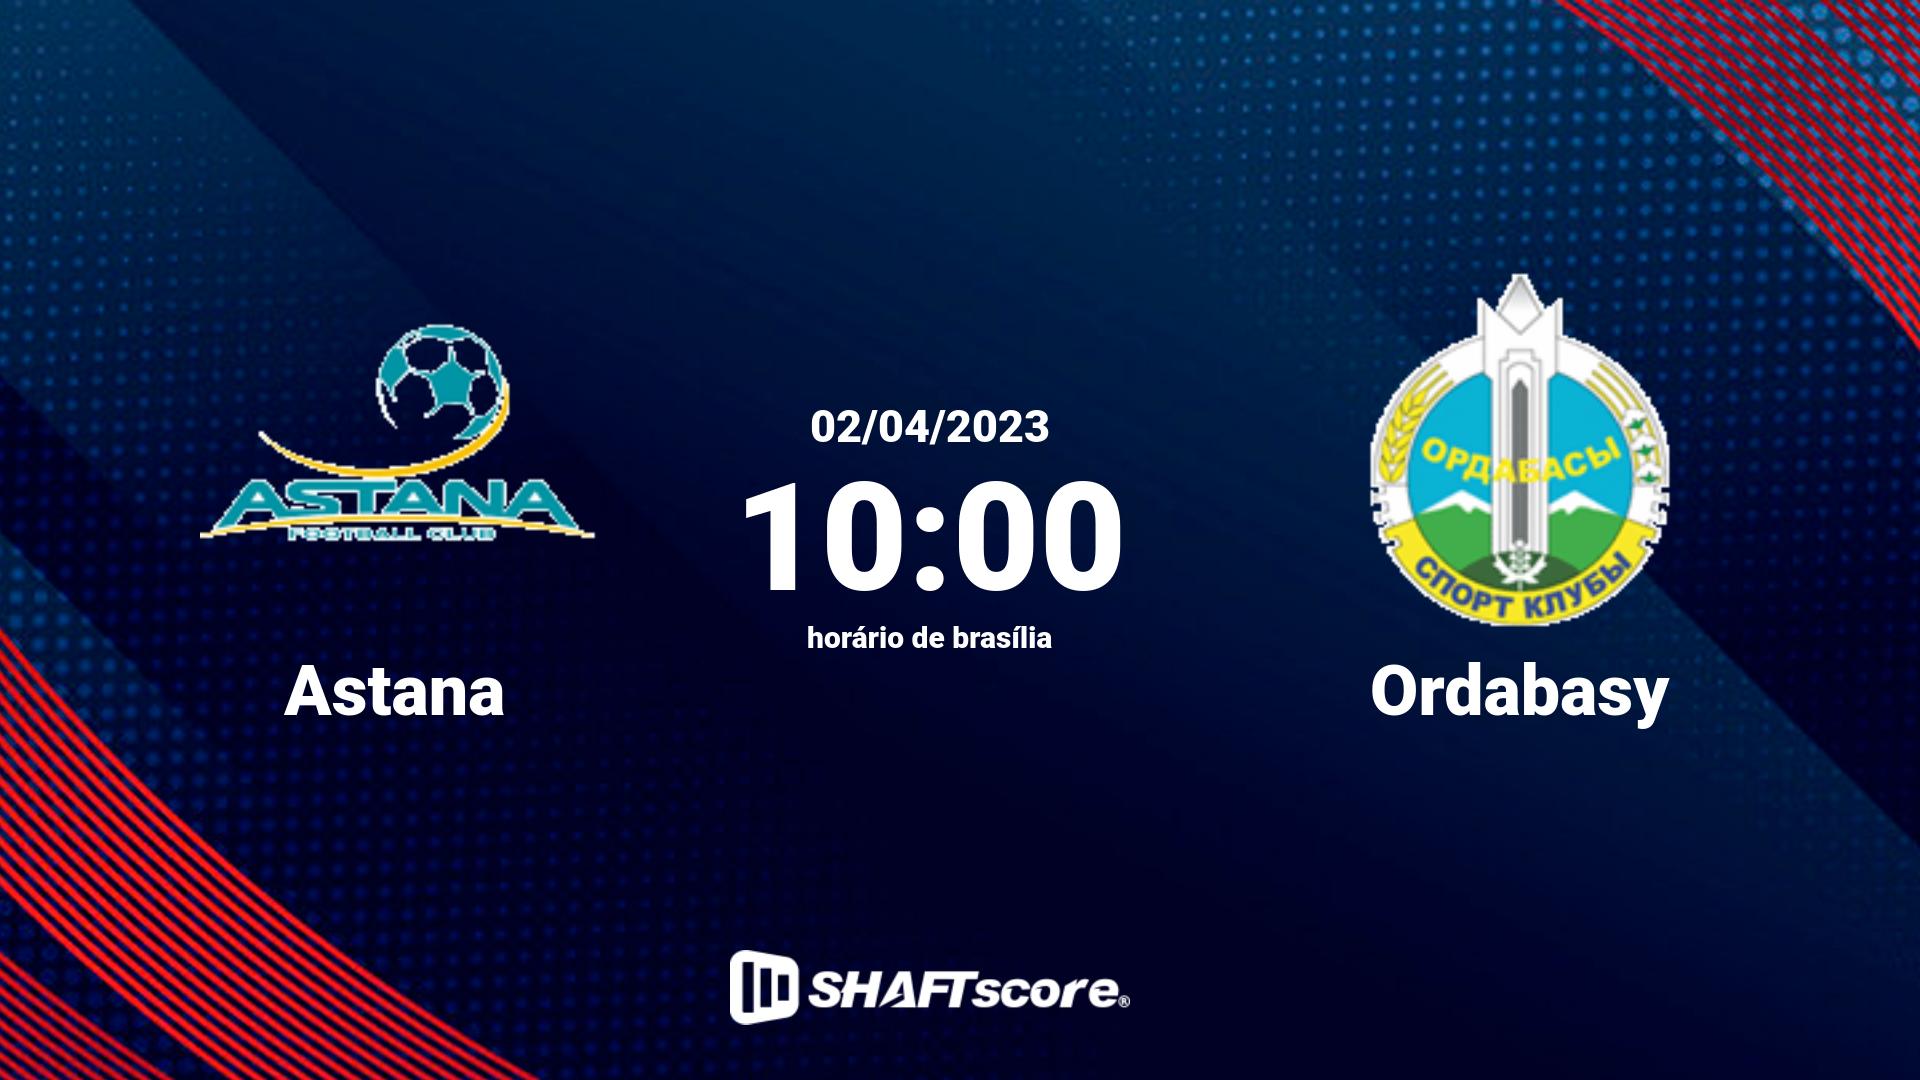 Estatísticas do jogo Astana vs Ordabasy 02.04 10:00